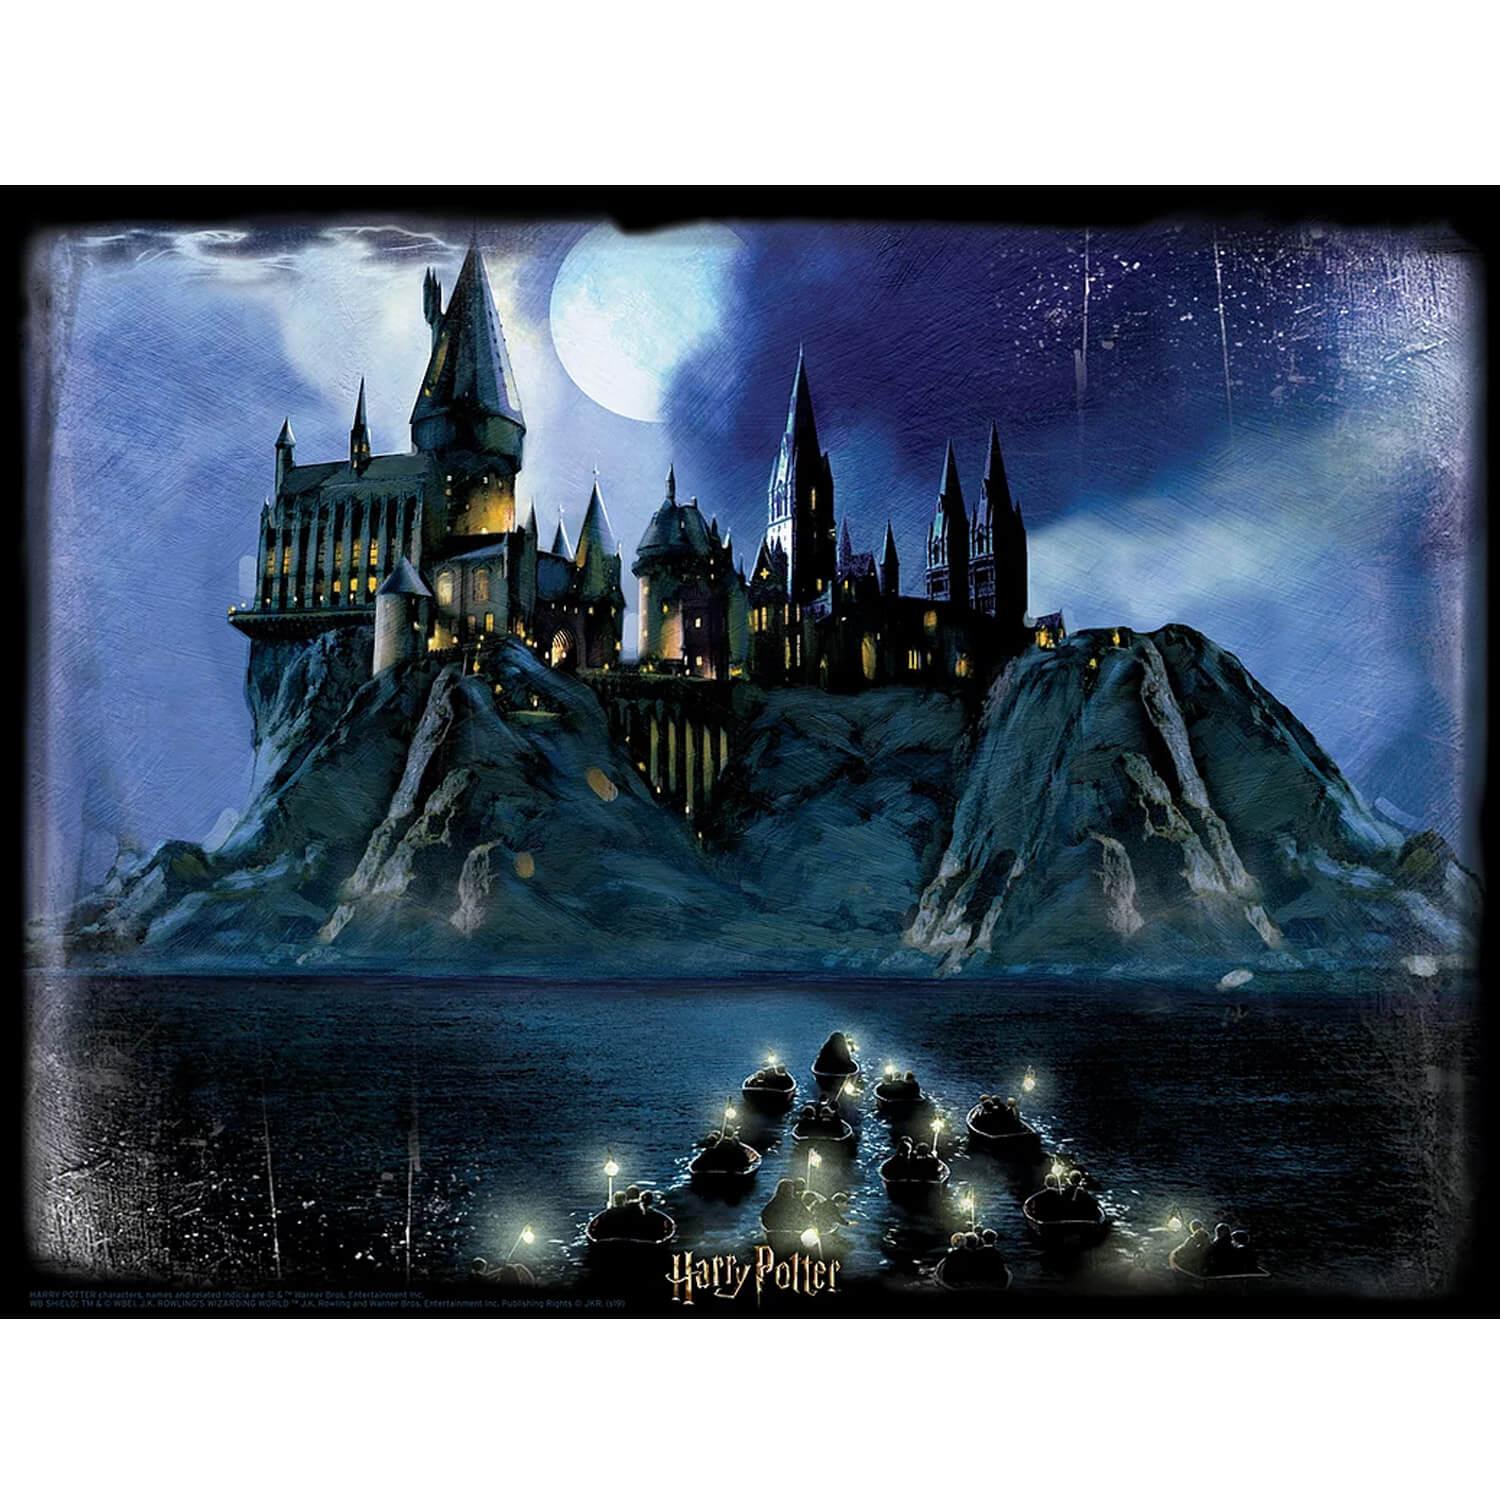 300 pieces puzzle: Super 5D puzzle Harry Potter: Hogwarts